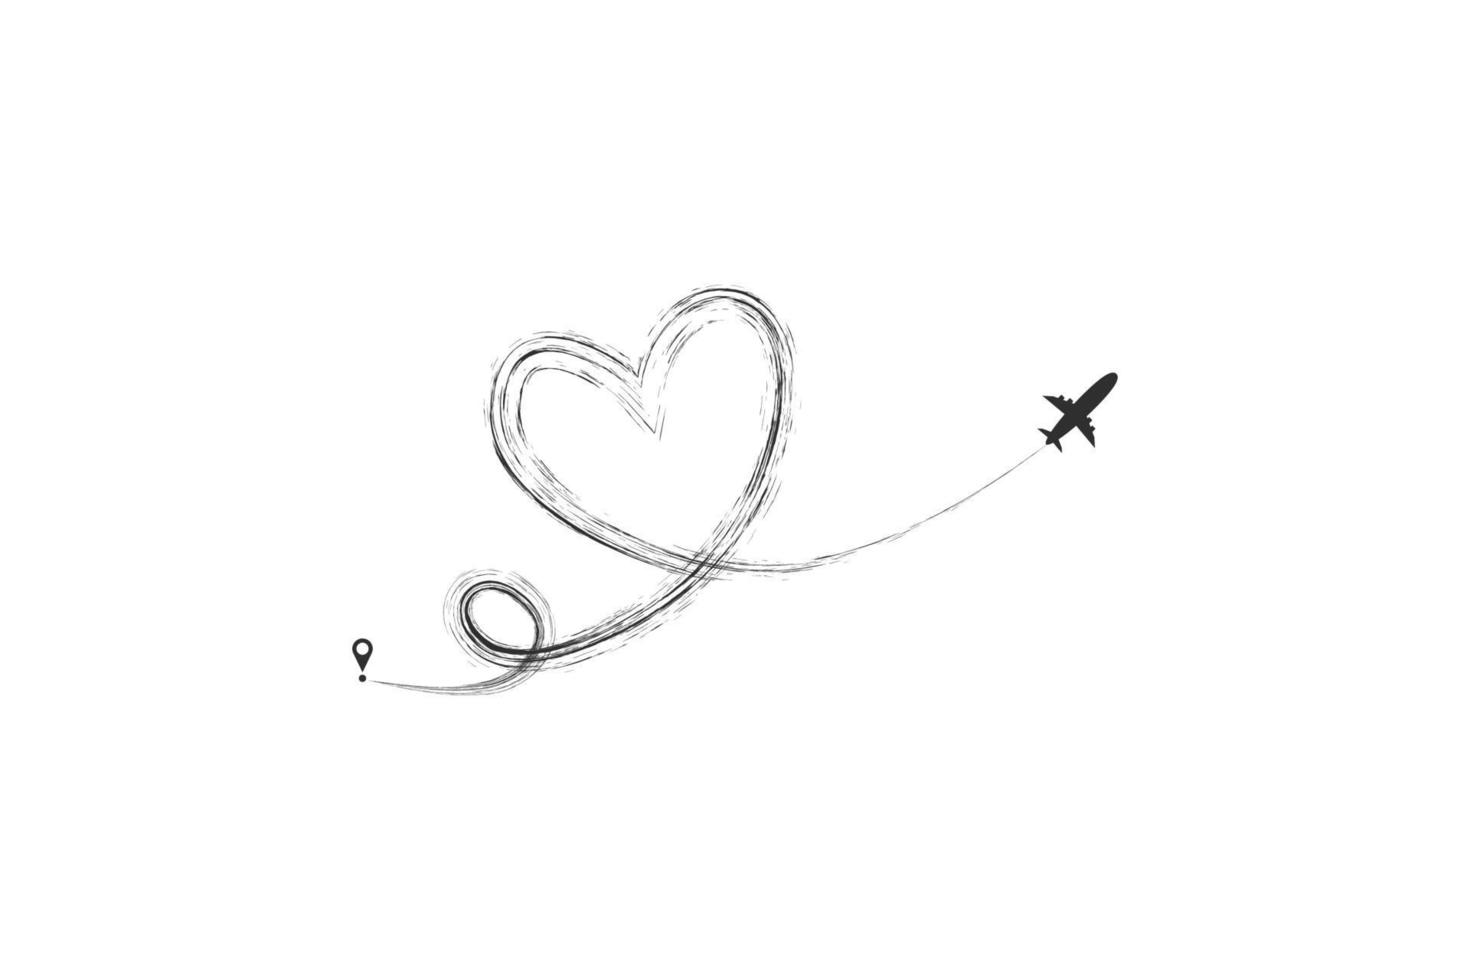 Ebene und seine Spur in Form eines Herzens auf weißem Hintergrund. Vektorillustration. Flugbahn des Flugzeugs und seine Route vektor